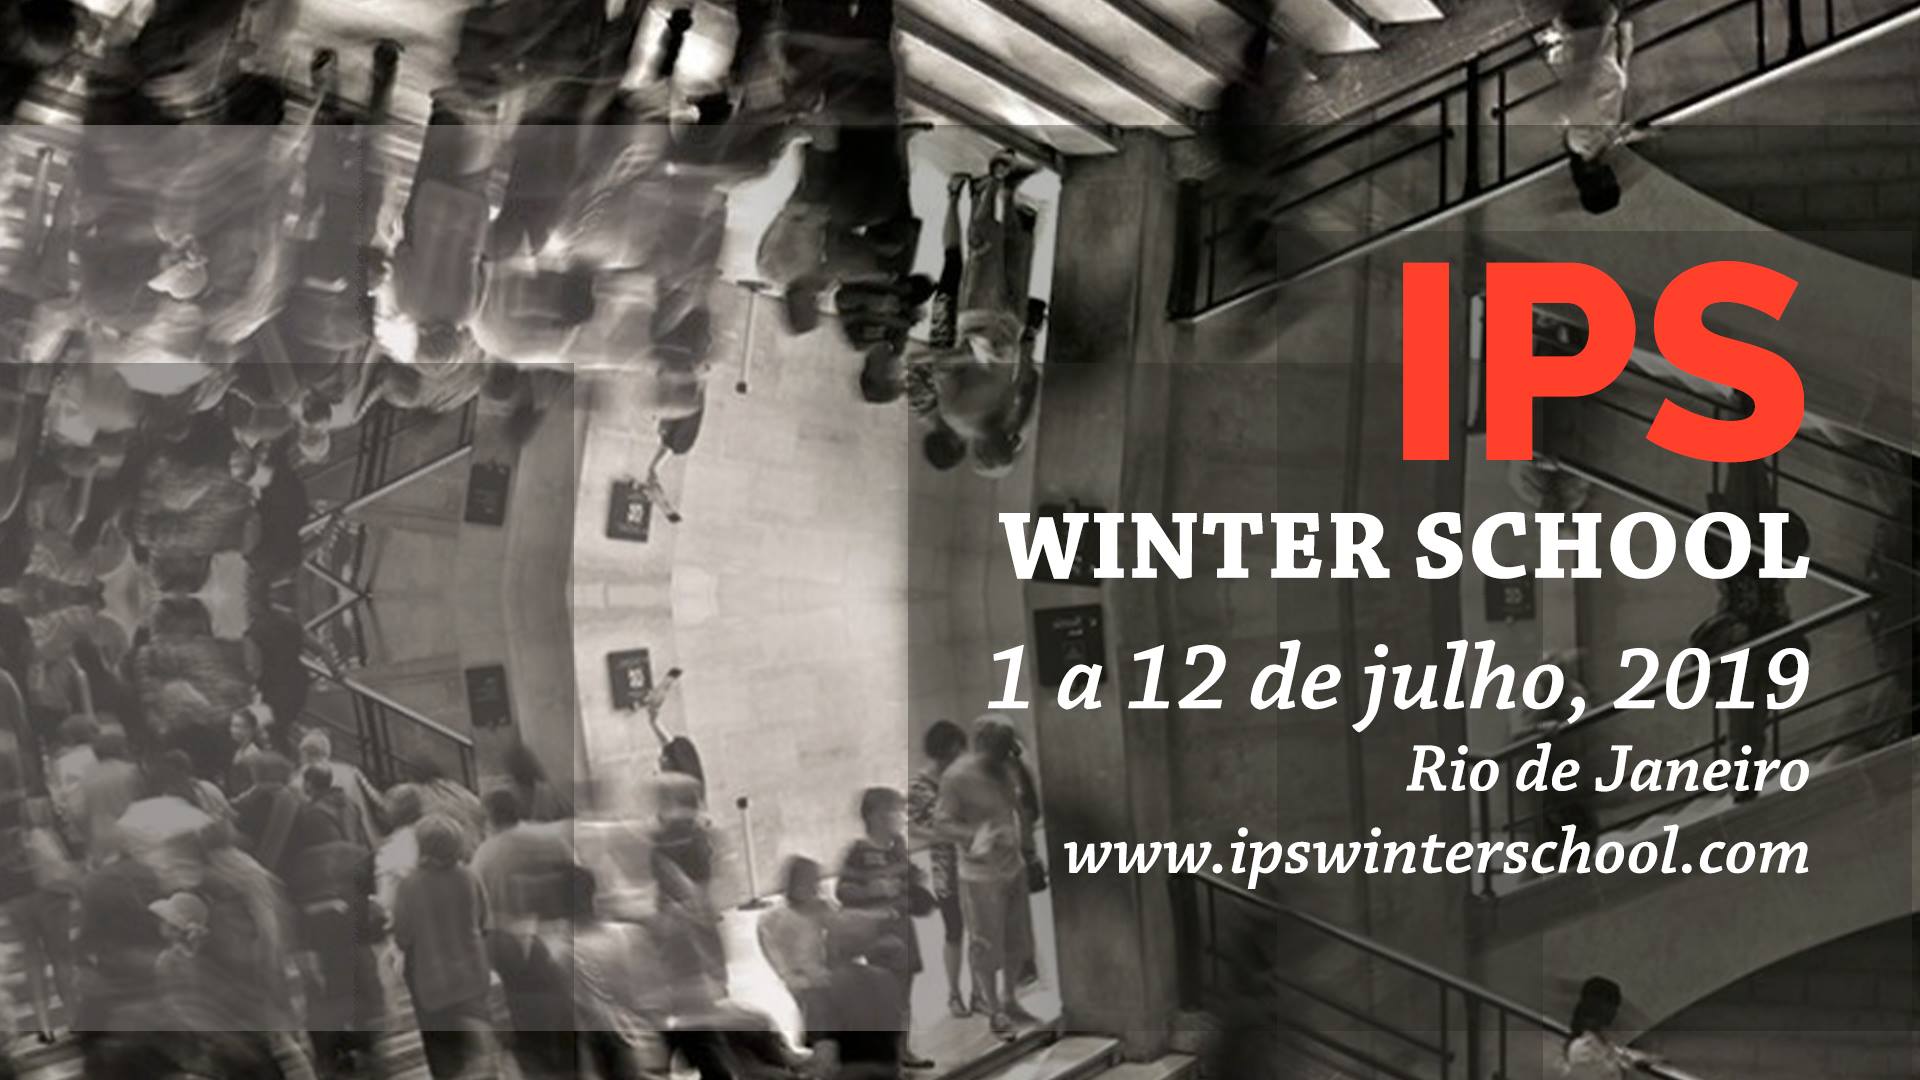 IPS Winter School 2019